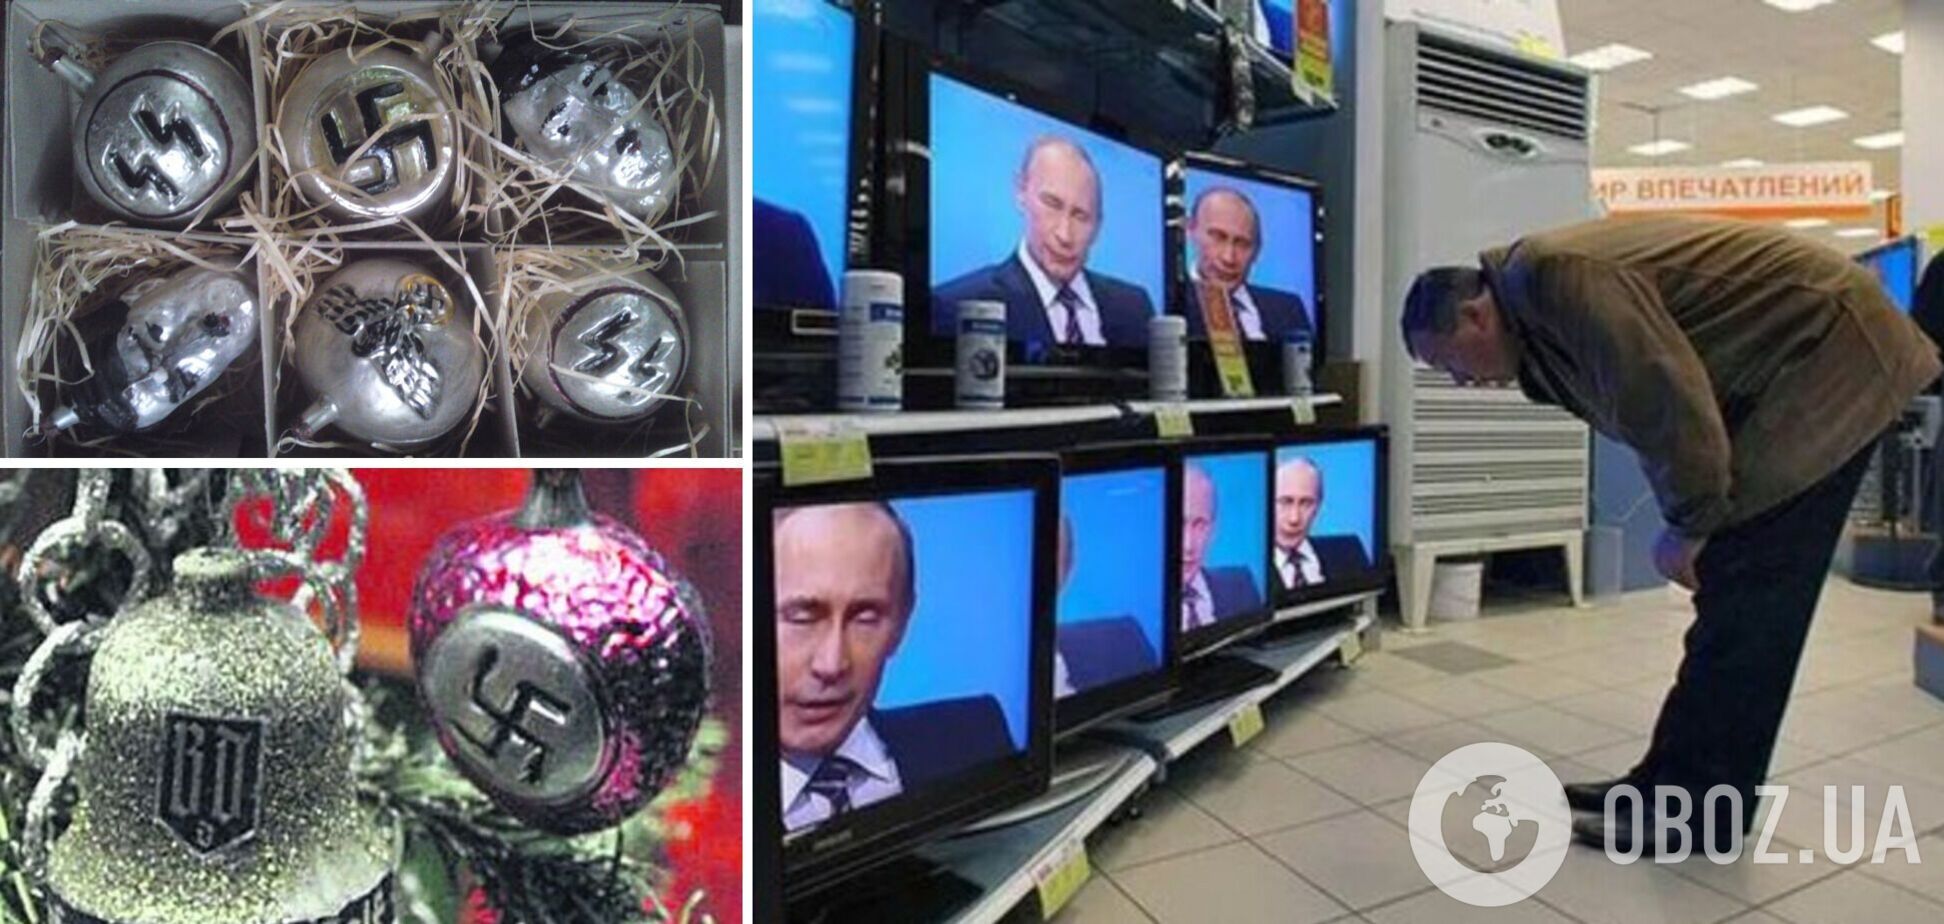 Российская пропаганда создала новый бредовый фейк об украинцах